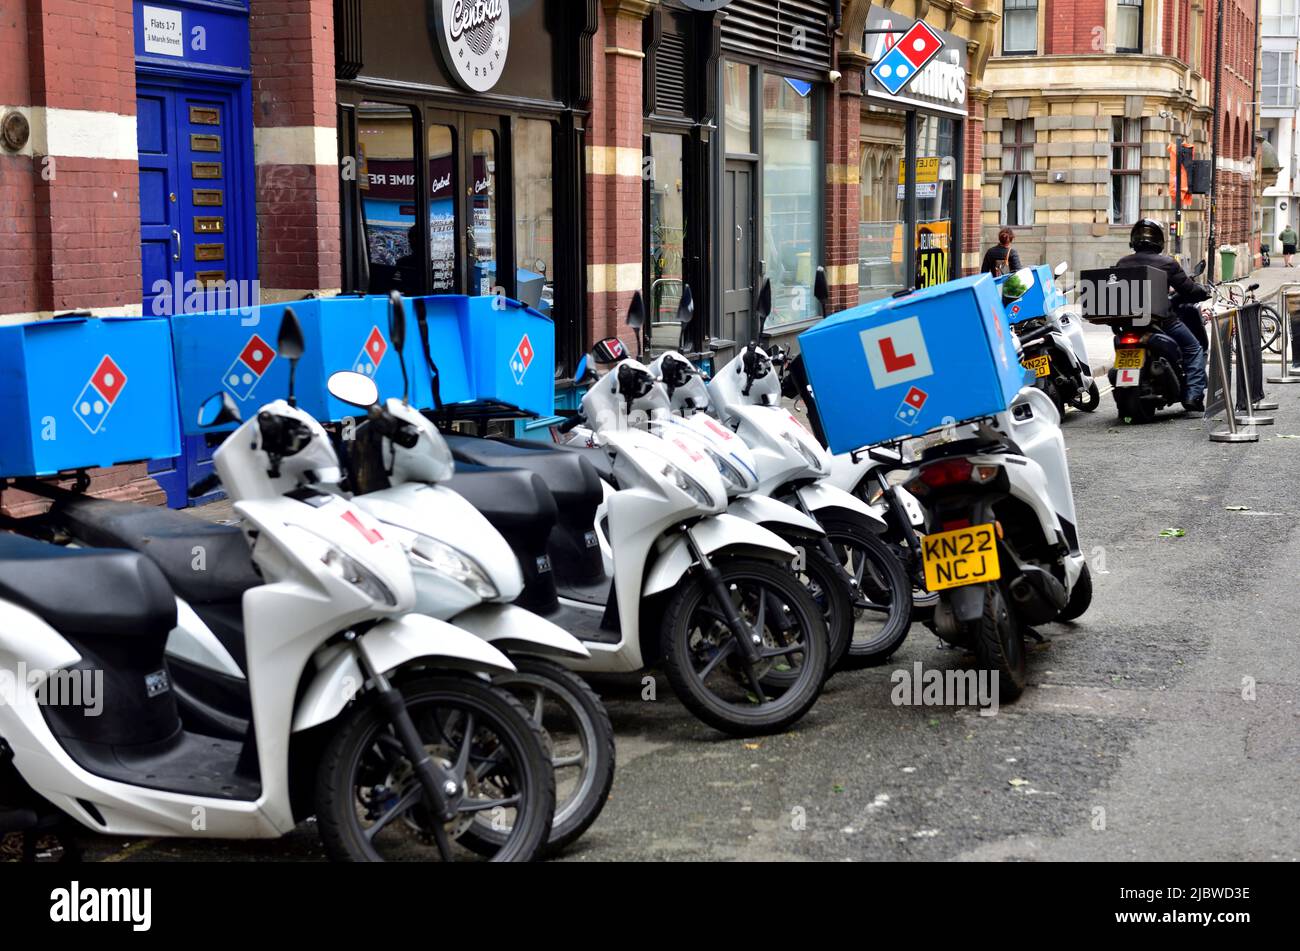 File di scooter di consegna "L plated" per il ristorante Domino Pizza, Bristol, Regno Unito Foto Stock